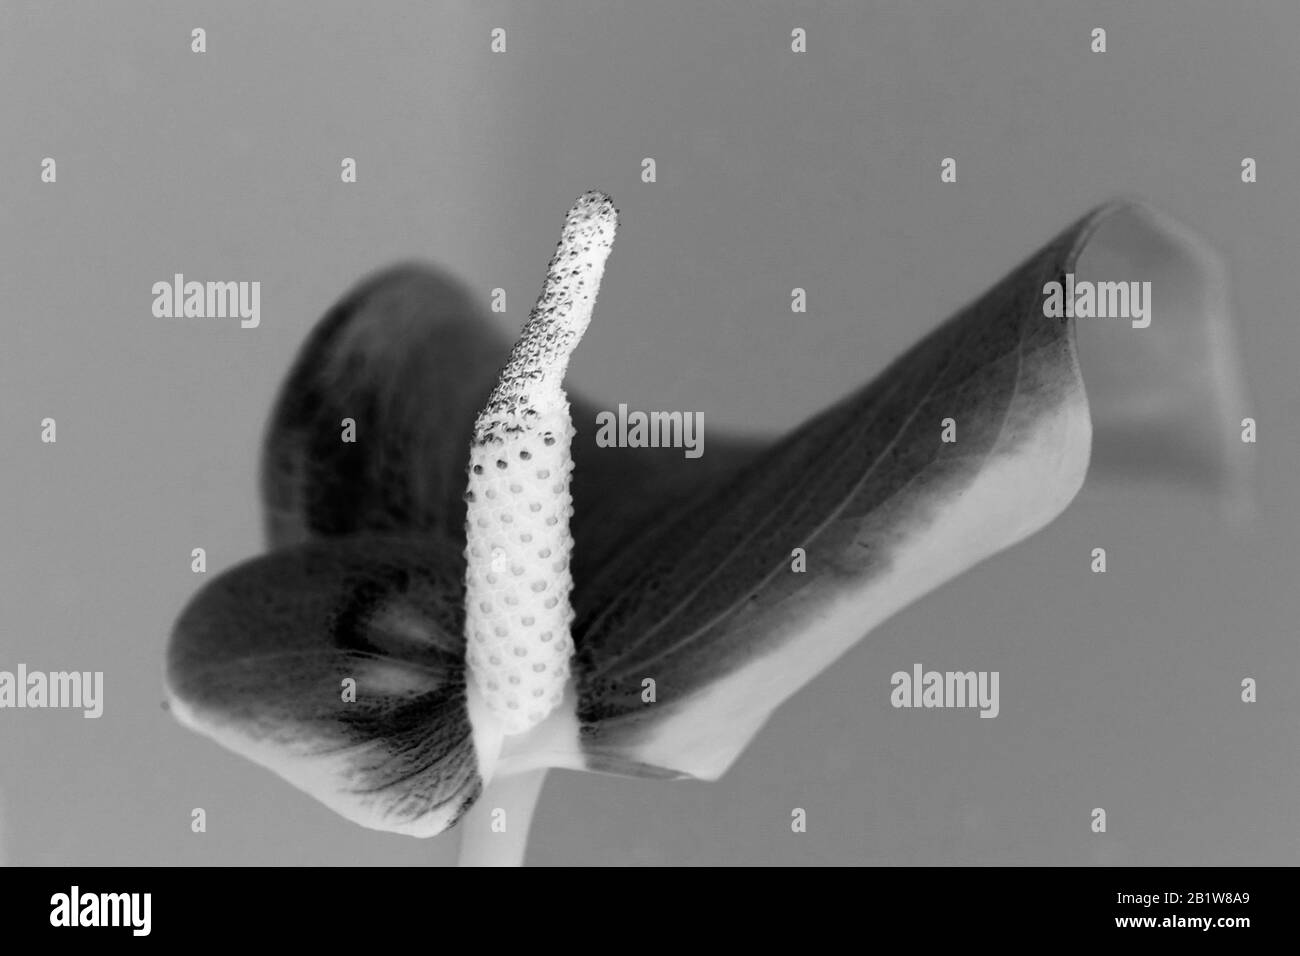 Macro photographie noir et blanc d'une fleur - plante Banque D'Images